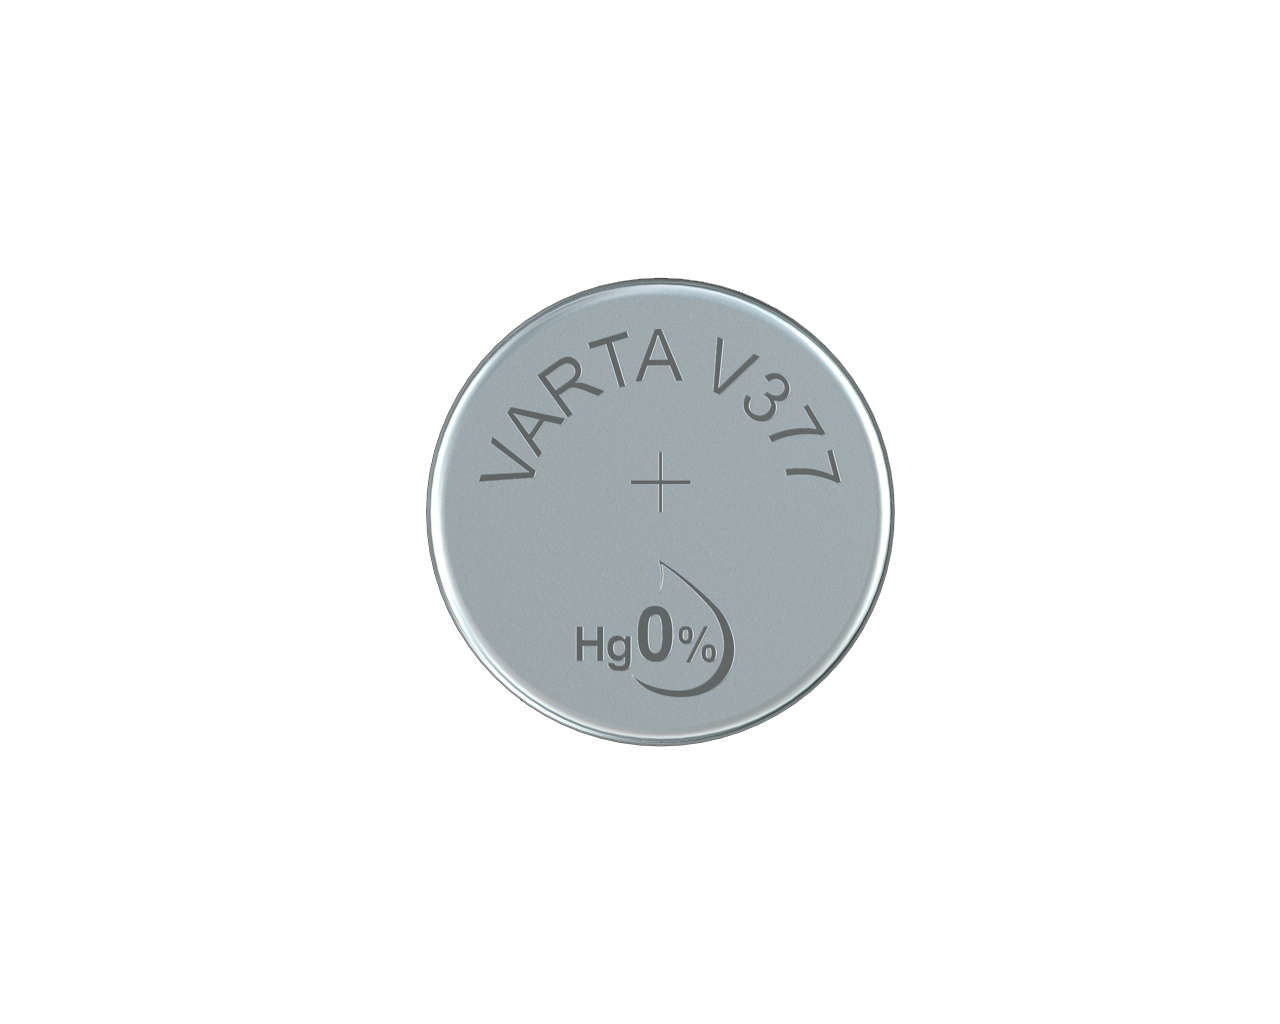 Varta Watch V377 SR66 1,55 V Uhrenbatterie 21mAh (1er Blister)